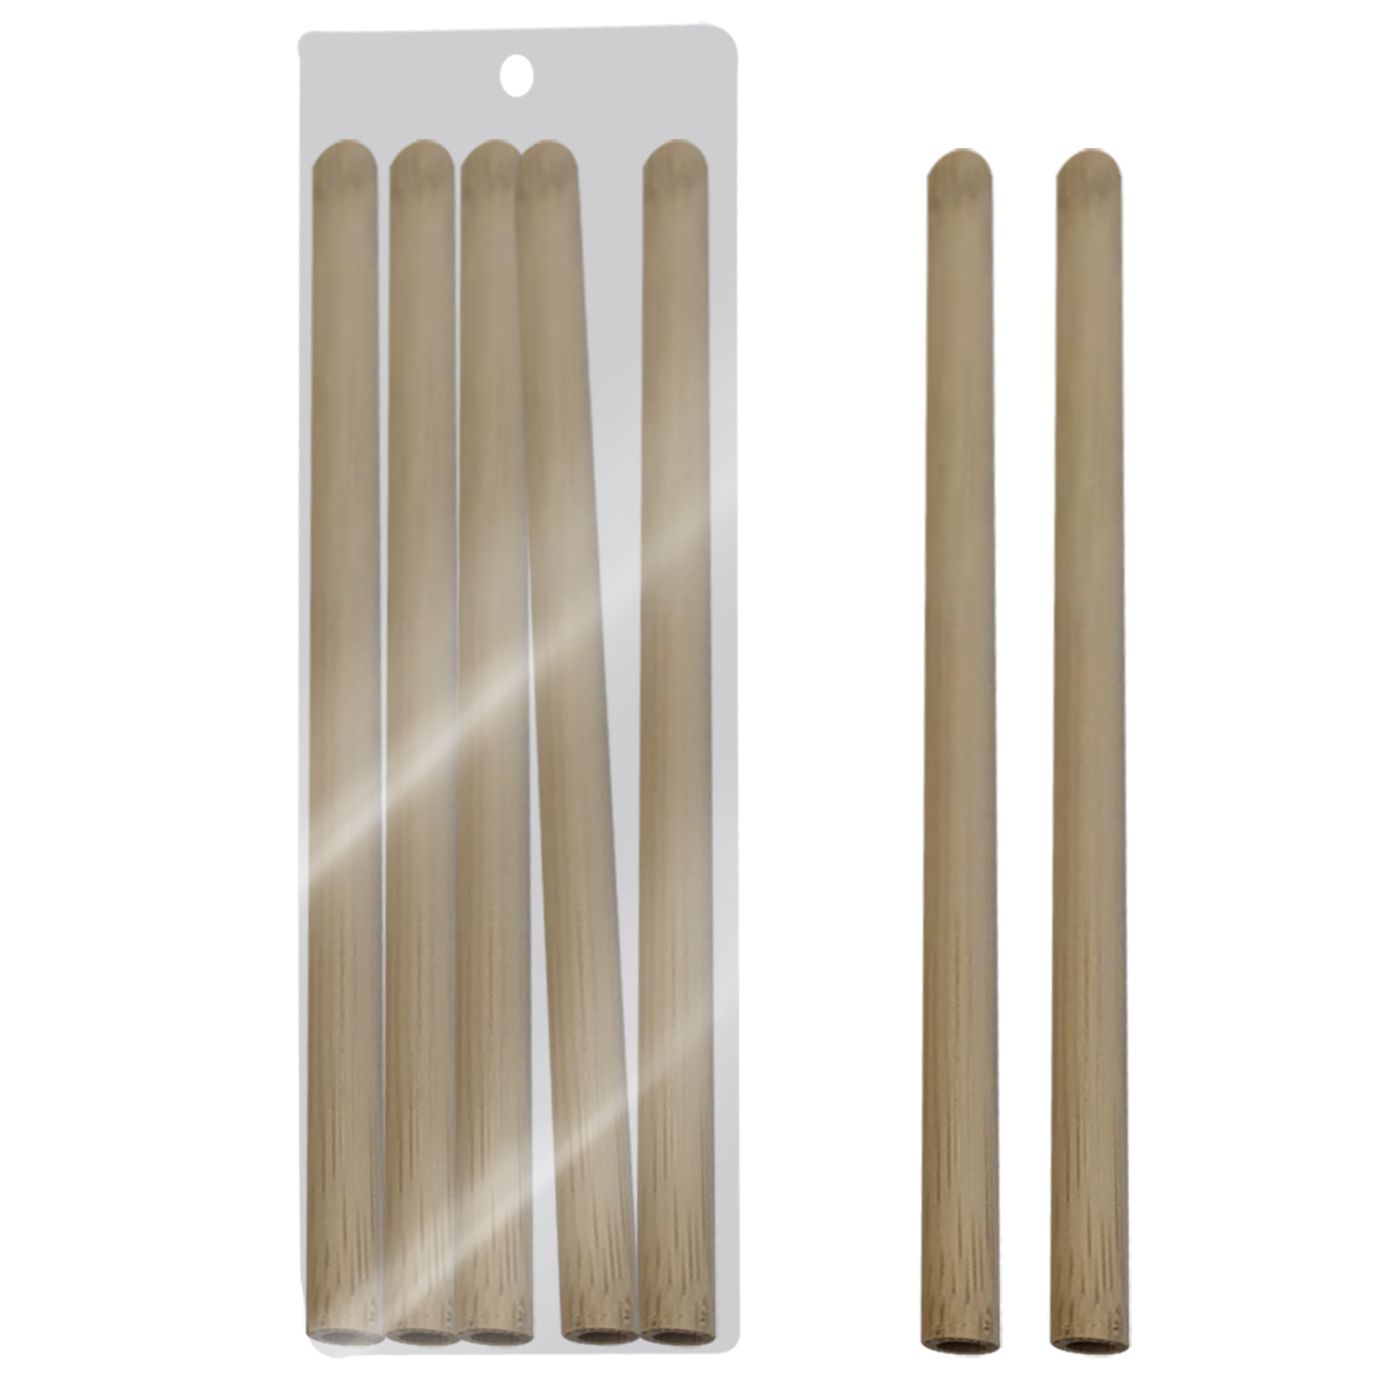 Καλαμάκια Bamboo Σετ 5τμχ 20εκ. Homie 81-887 (Υλικό: Bamboo) – Homie – 81-887